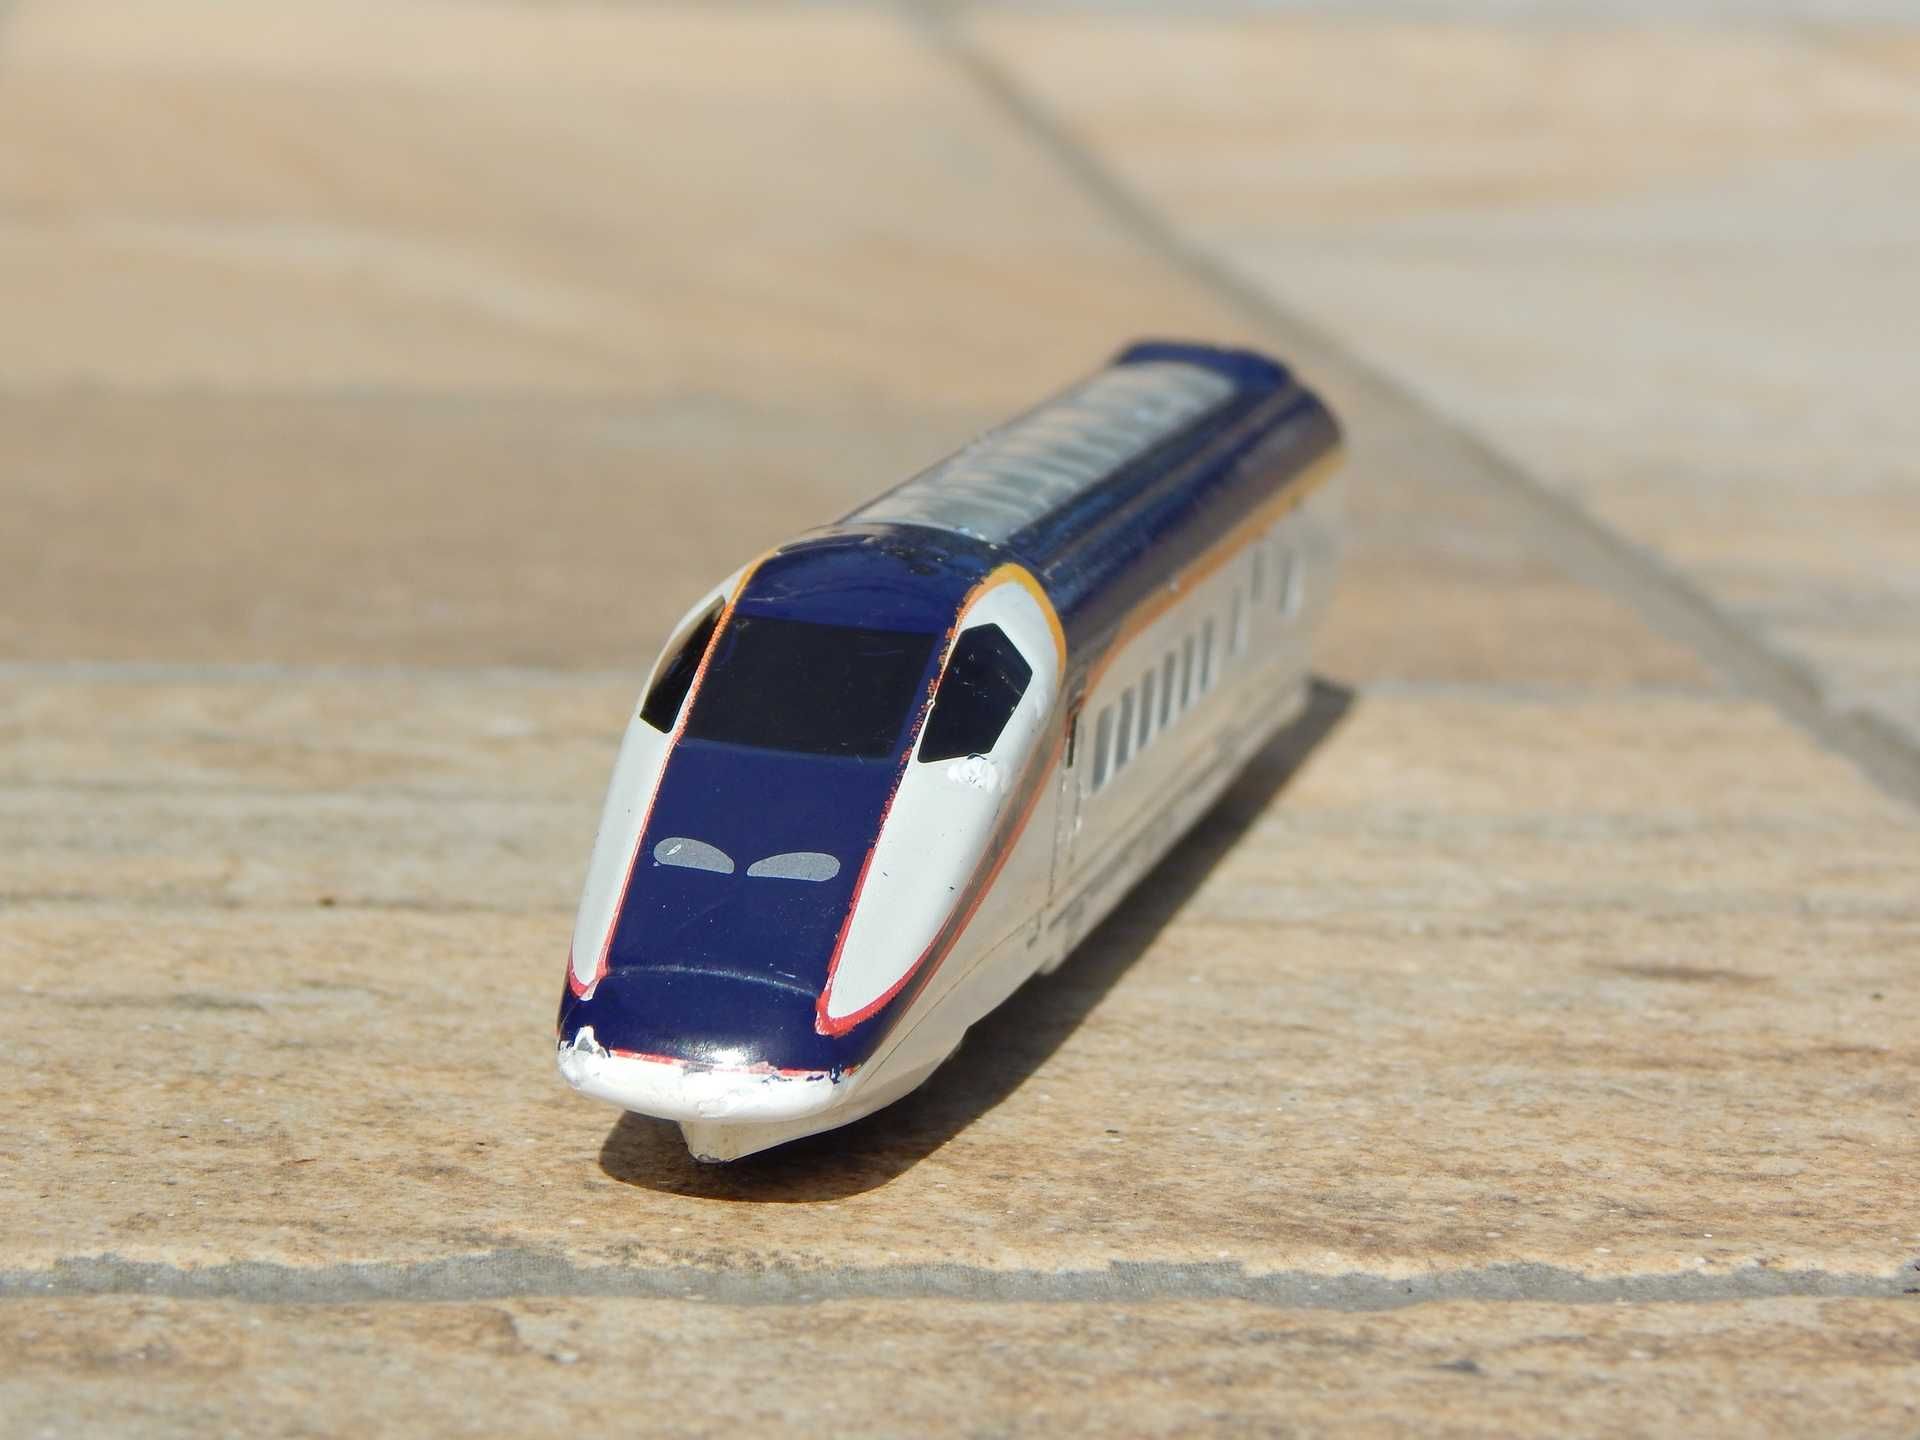 Macheta locomotiva tren japonez viteza Shinkansen Series 3 2014 Tomica